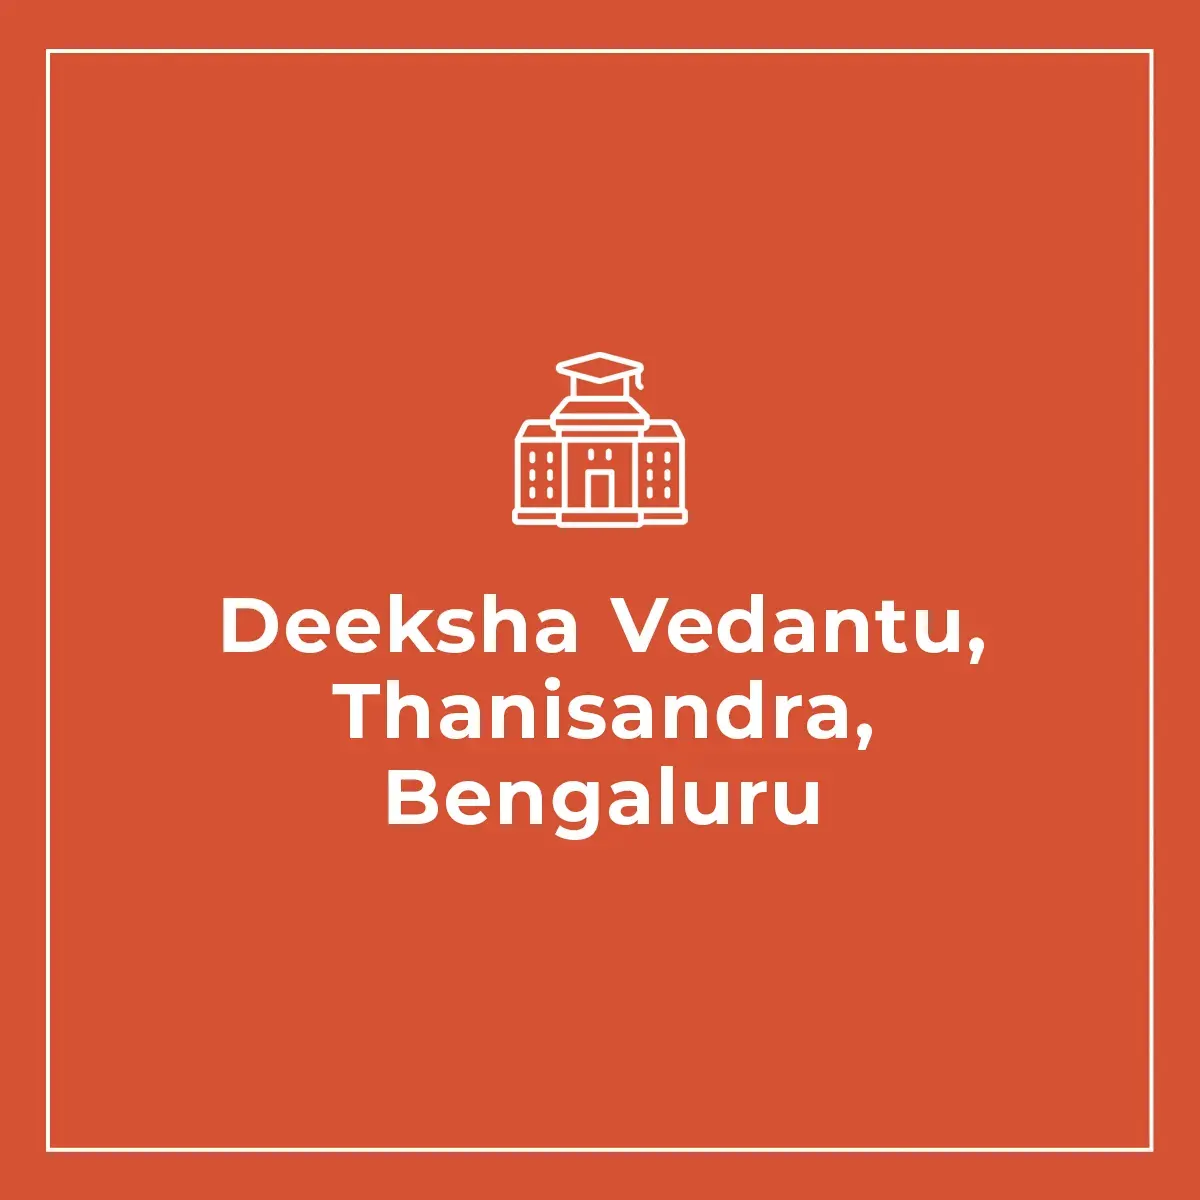 Deeksha Vedantu, Thanisandra, Bengaluru